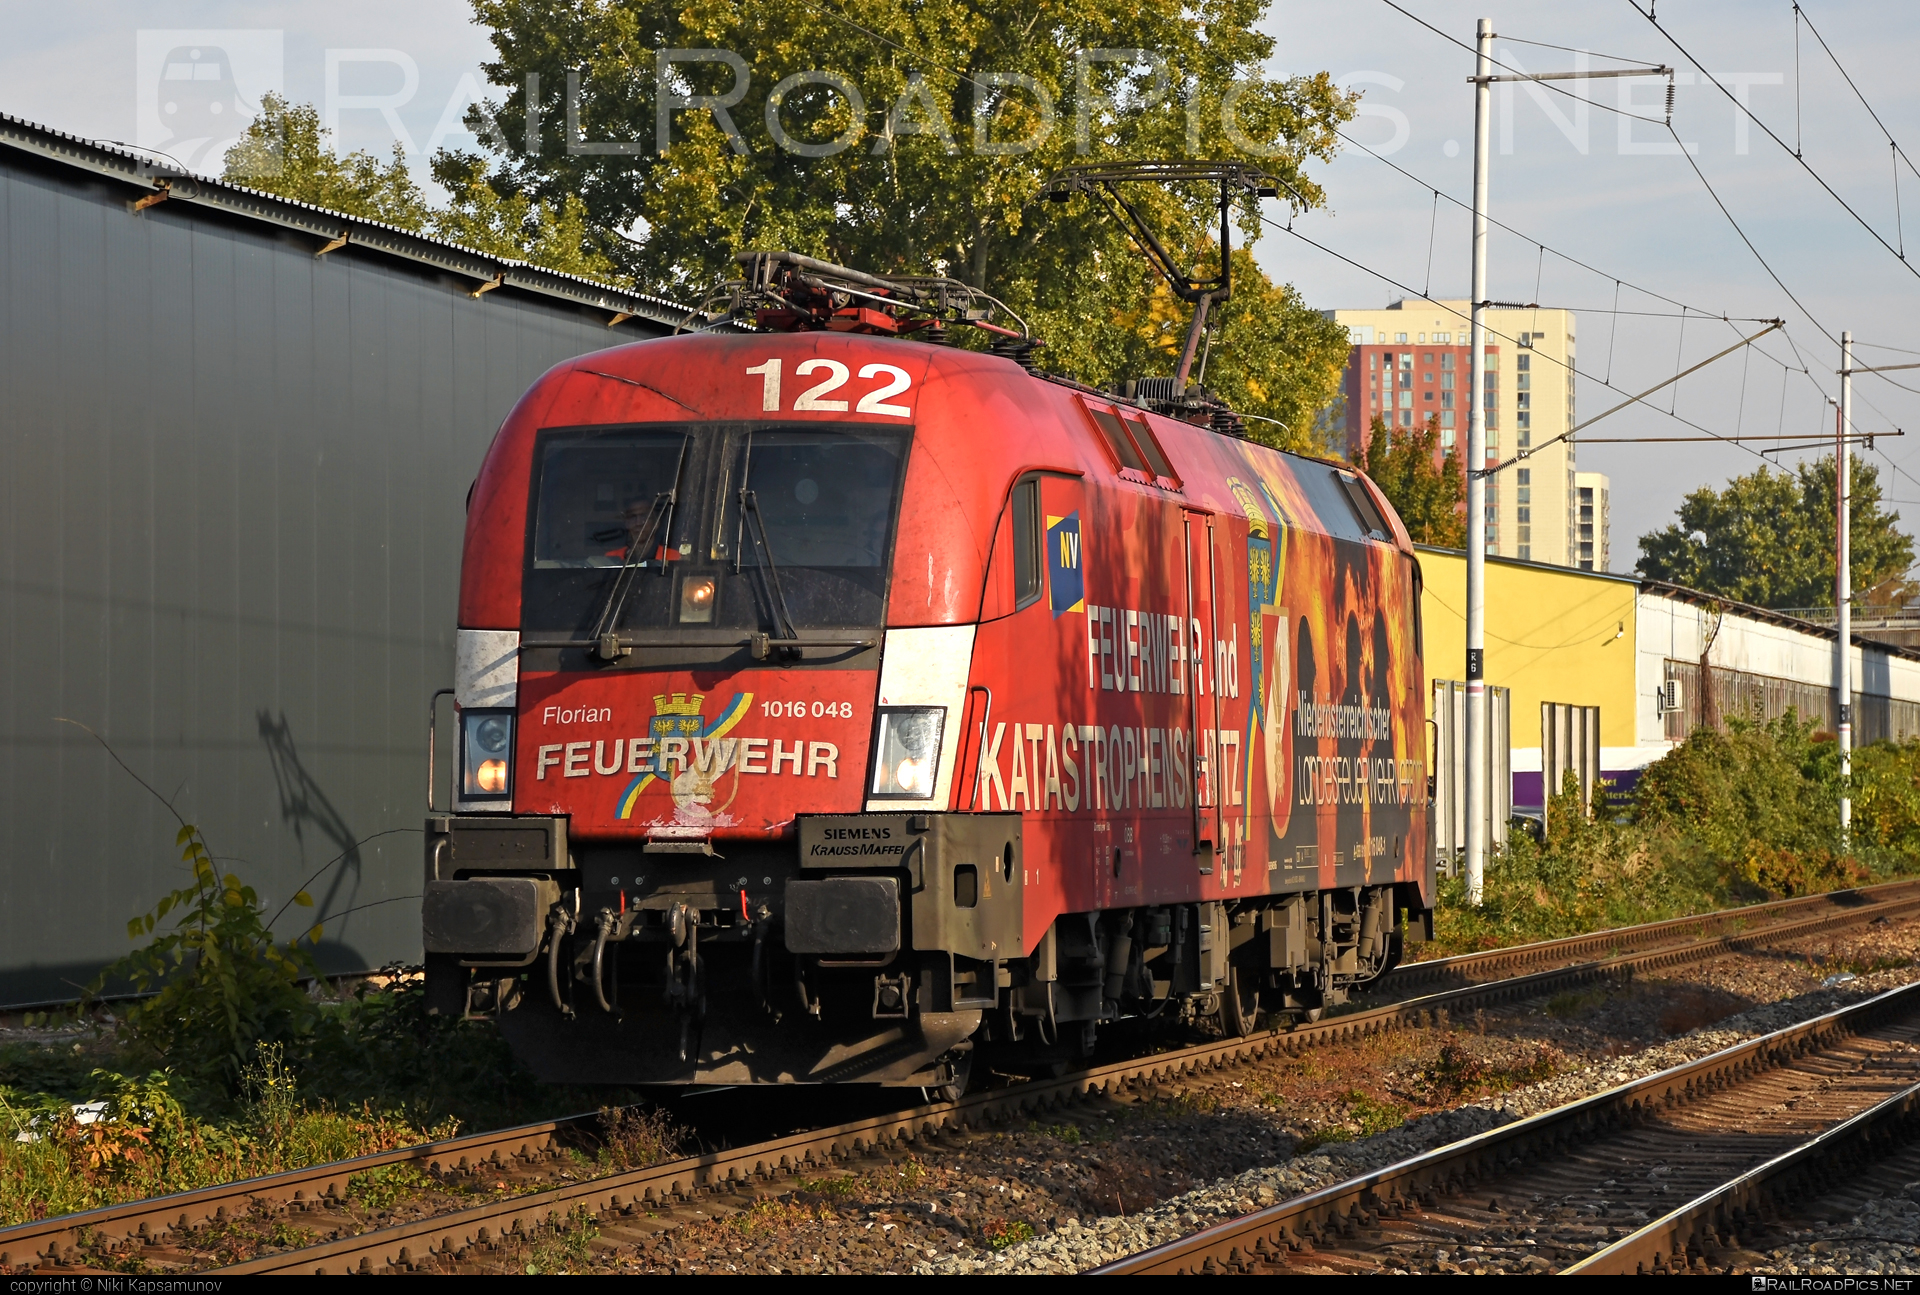 Siemens ES 64 U2 - 1016 048 operated by Rail Cargo Austria AG #es64 #es64u2 #eurosprinter #obb #osterreichischebundesbahnen #siemens #siemensEs64 #siemensEs64u2 #siemenstaurus #taurus #tauruslocomotive